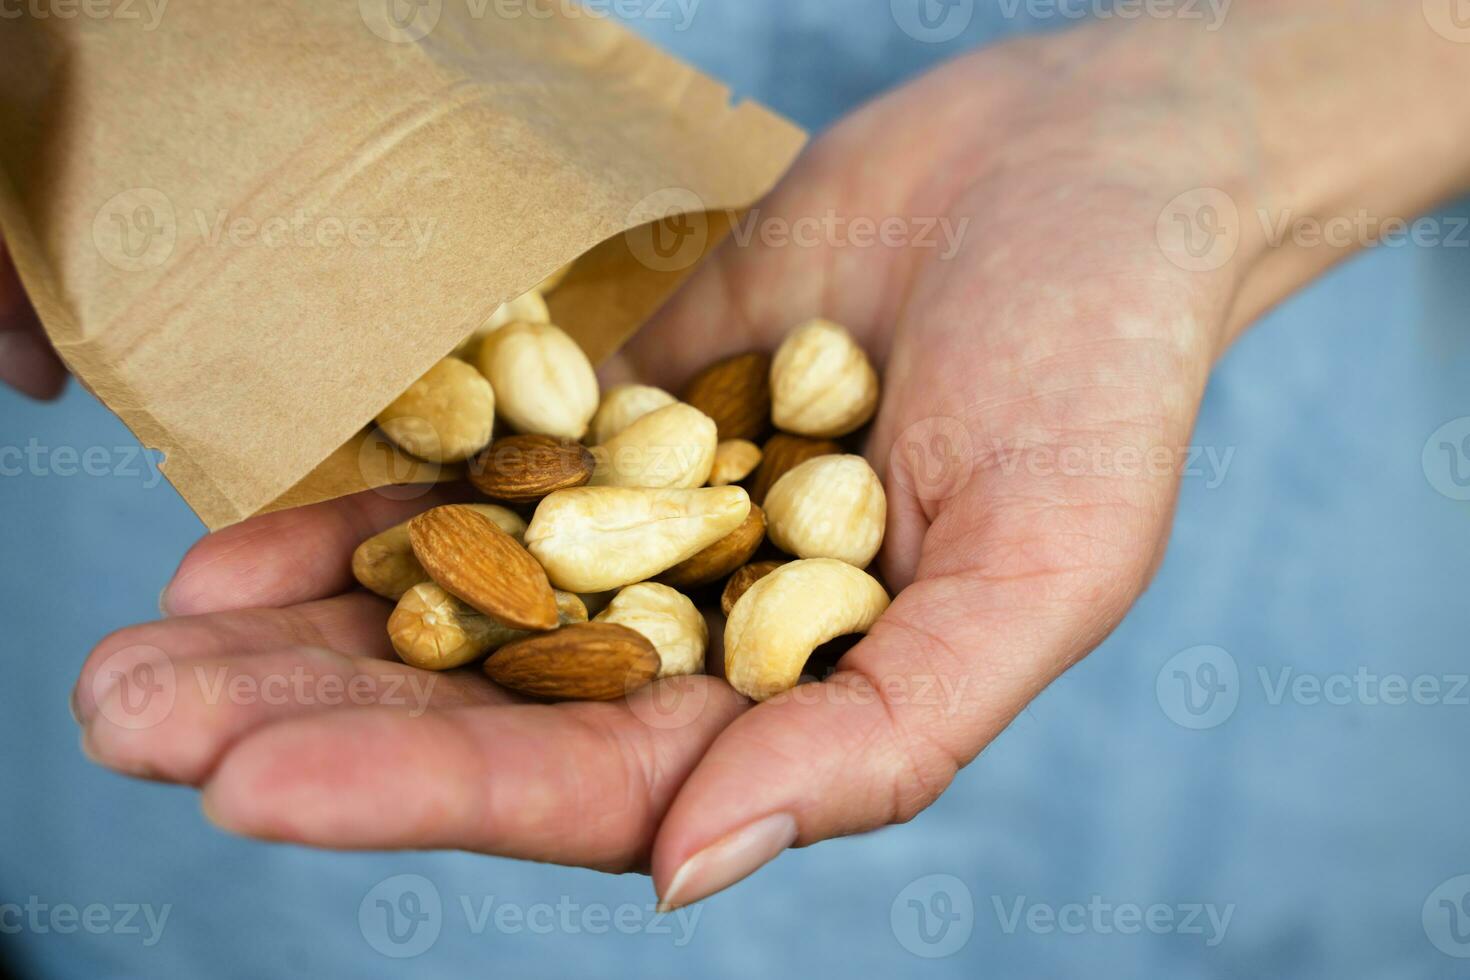 een vrouw giet een mengen van noten van een ecologisch papier zak in haar hand. gezond voedsel concept. detailopname. selectief focus. foto